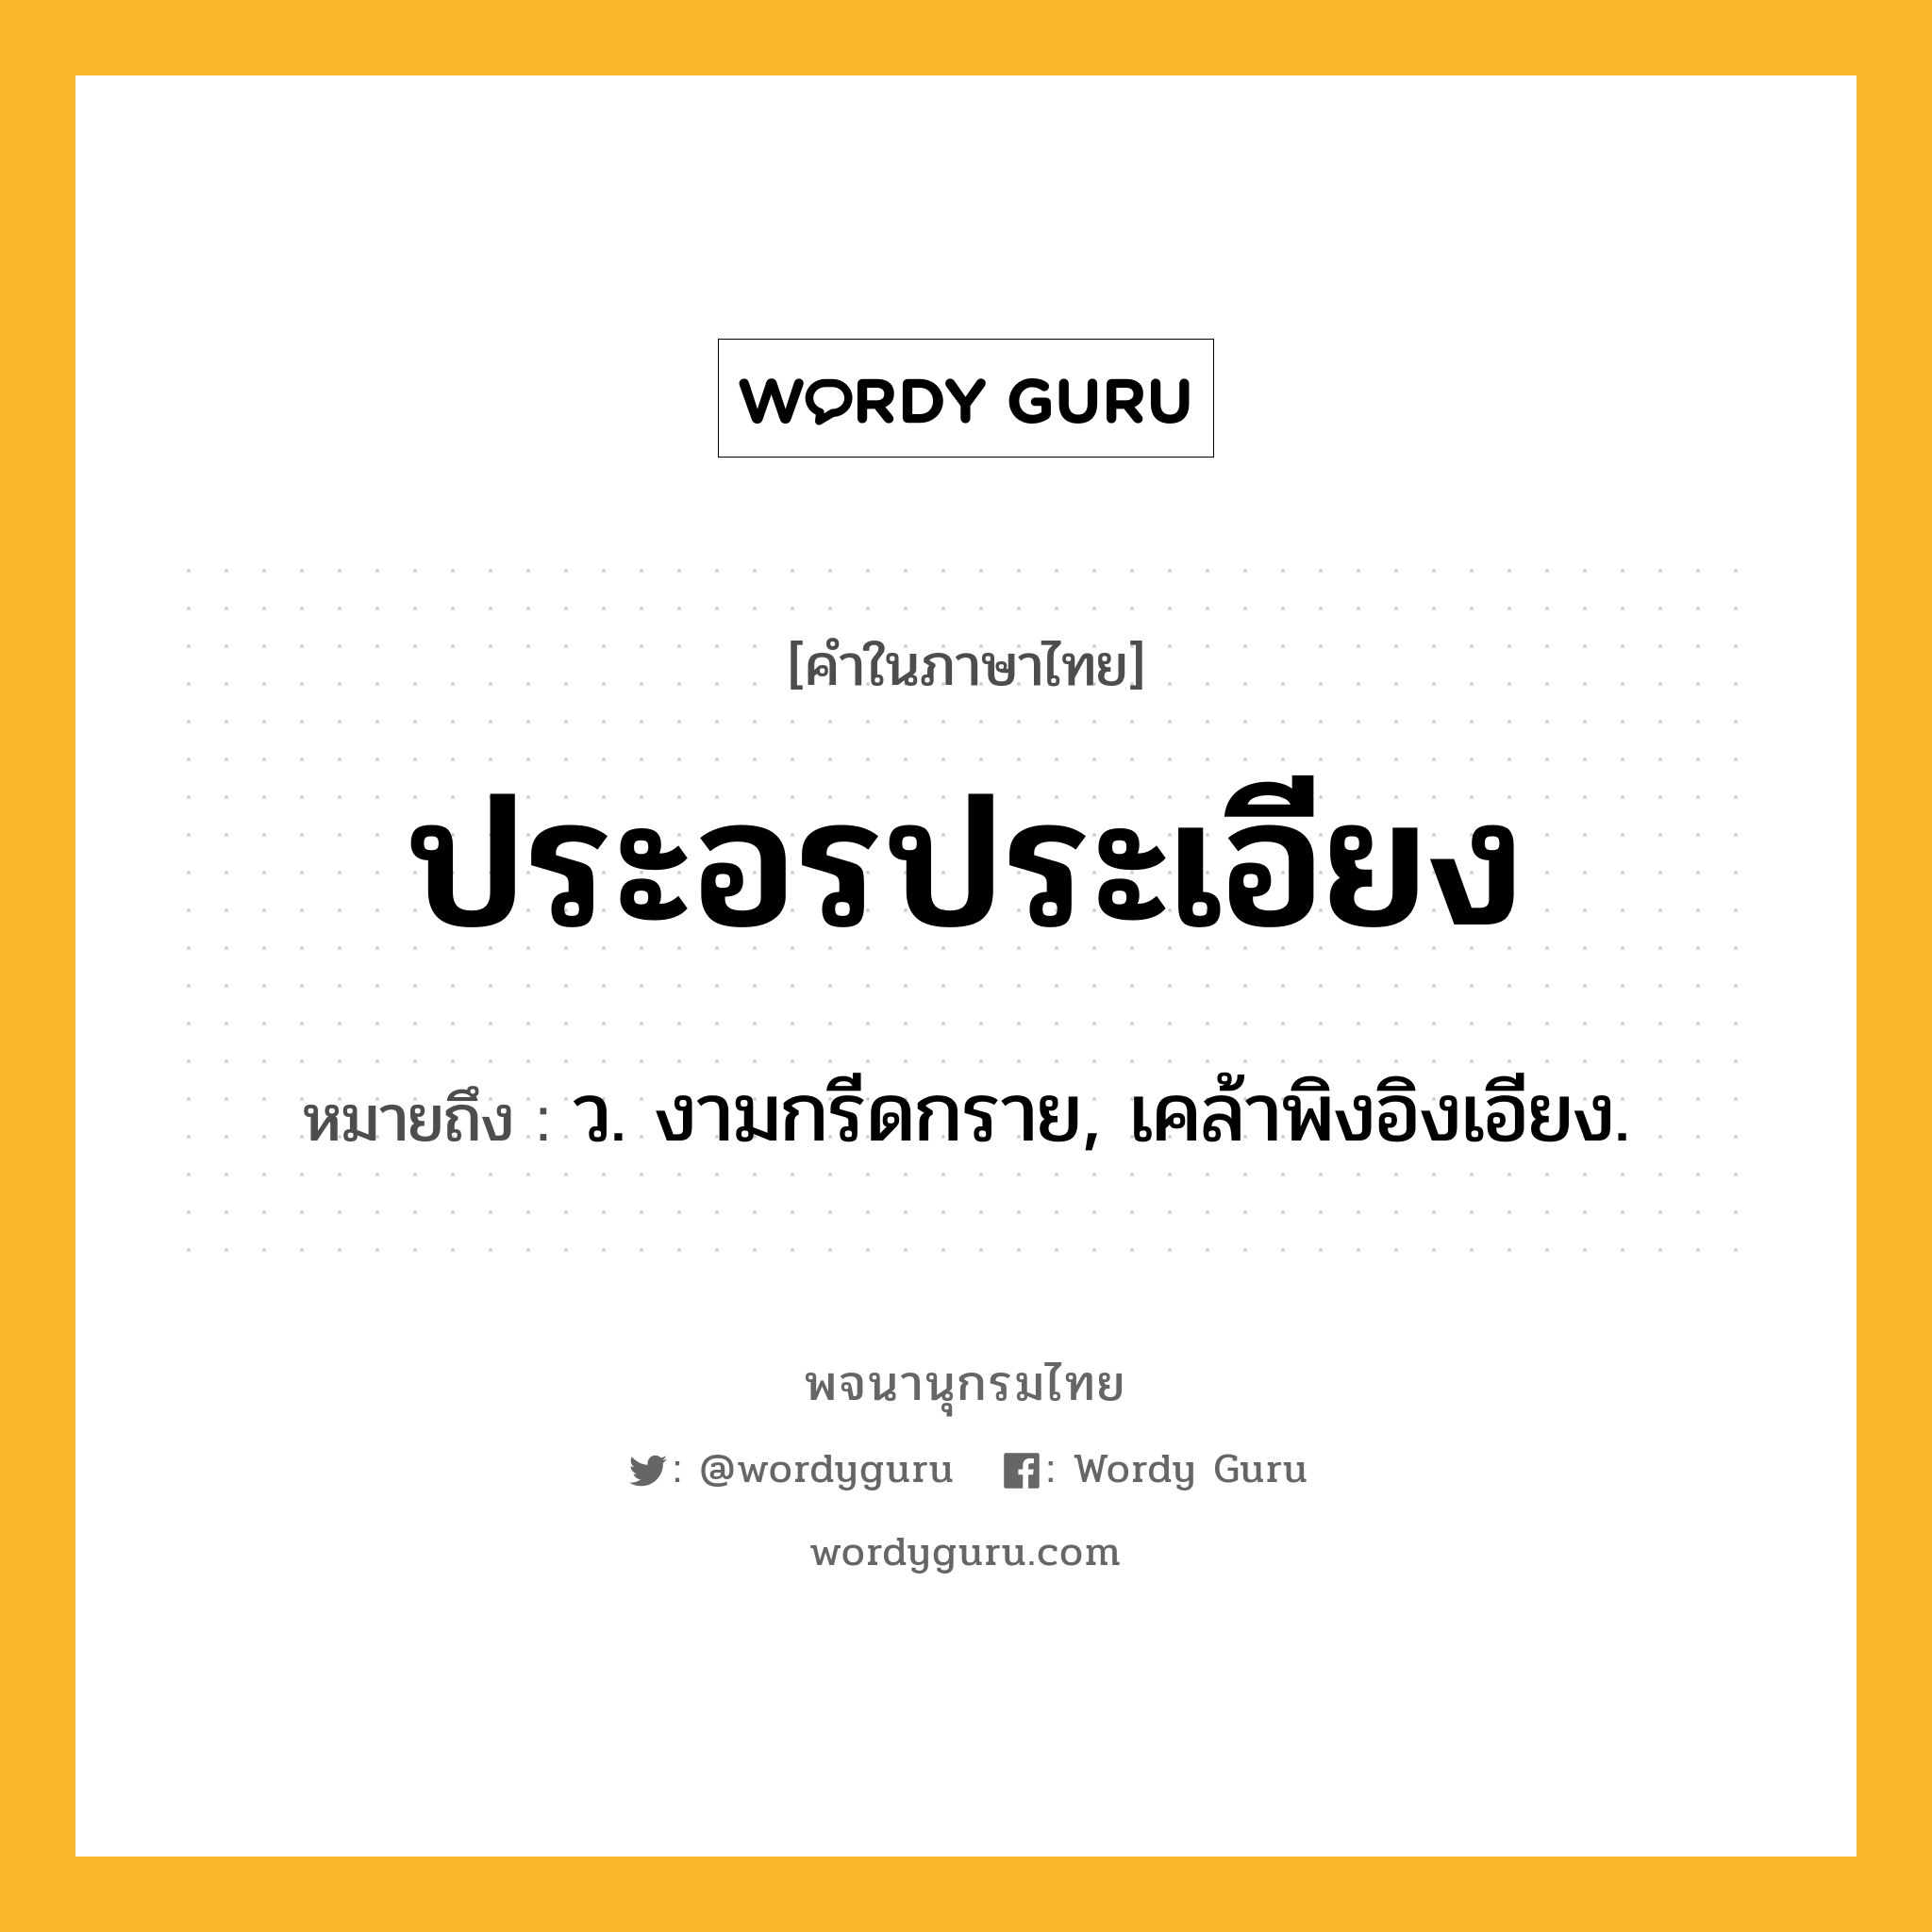 ประอรประเอียง หมายถึงอะไร?, คำในภาษาไทย ประอรประเอียง หมายถึง ว. งามกรีดกราย, เคล้าพิงอิงเอียง.